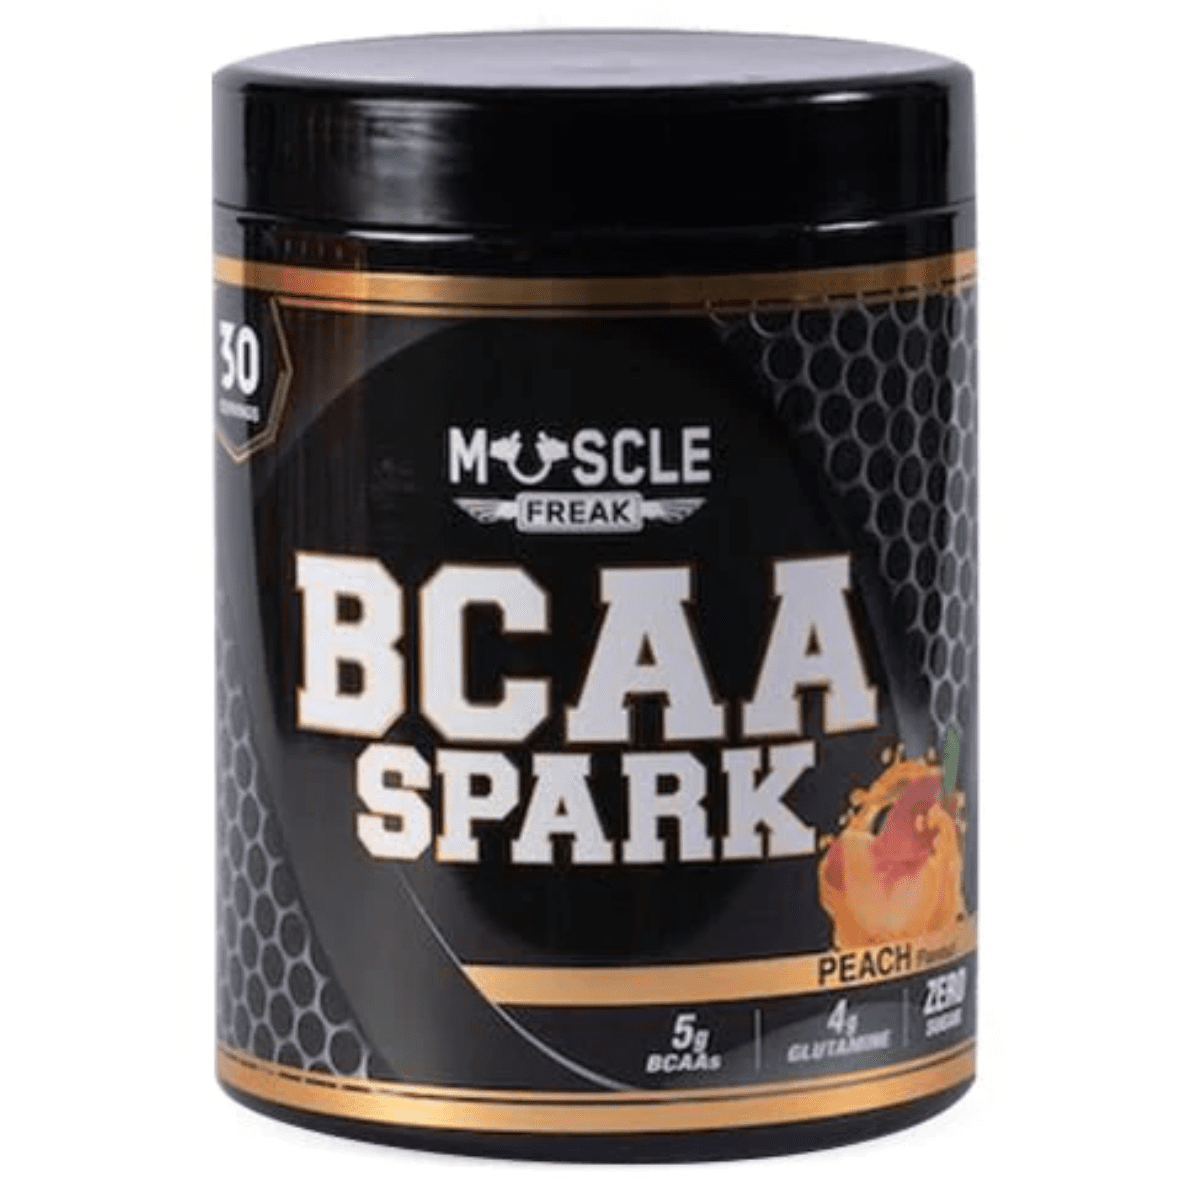 Muscle Freak BCAA Spark - 1